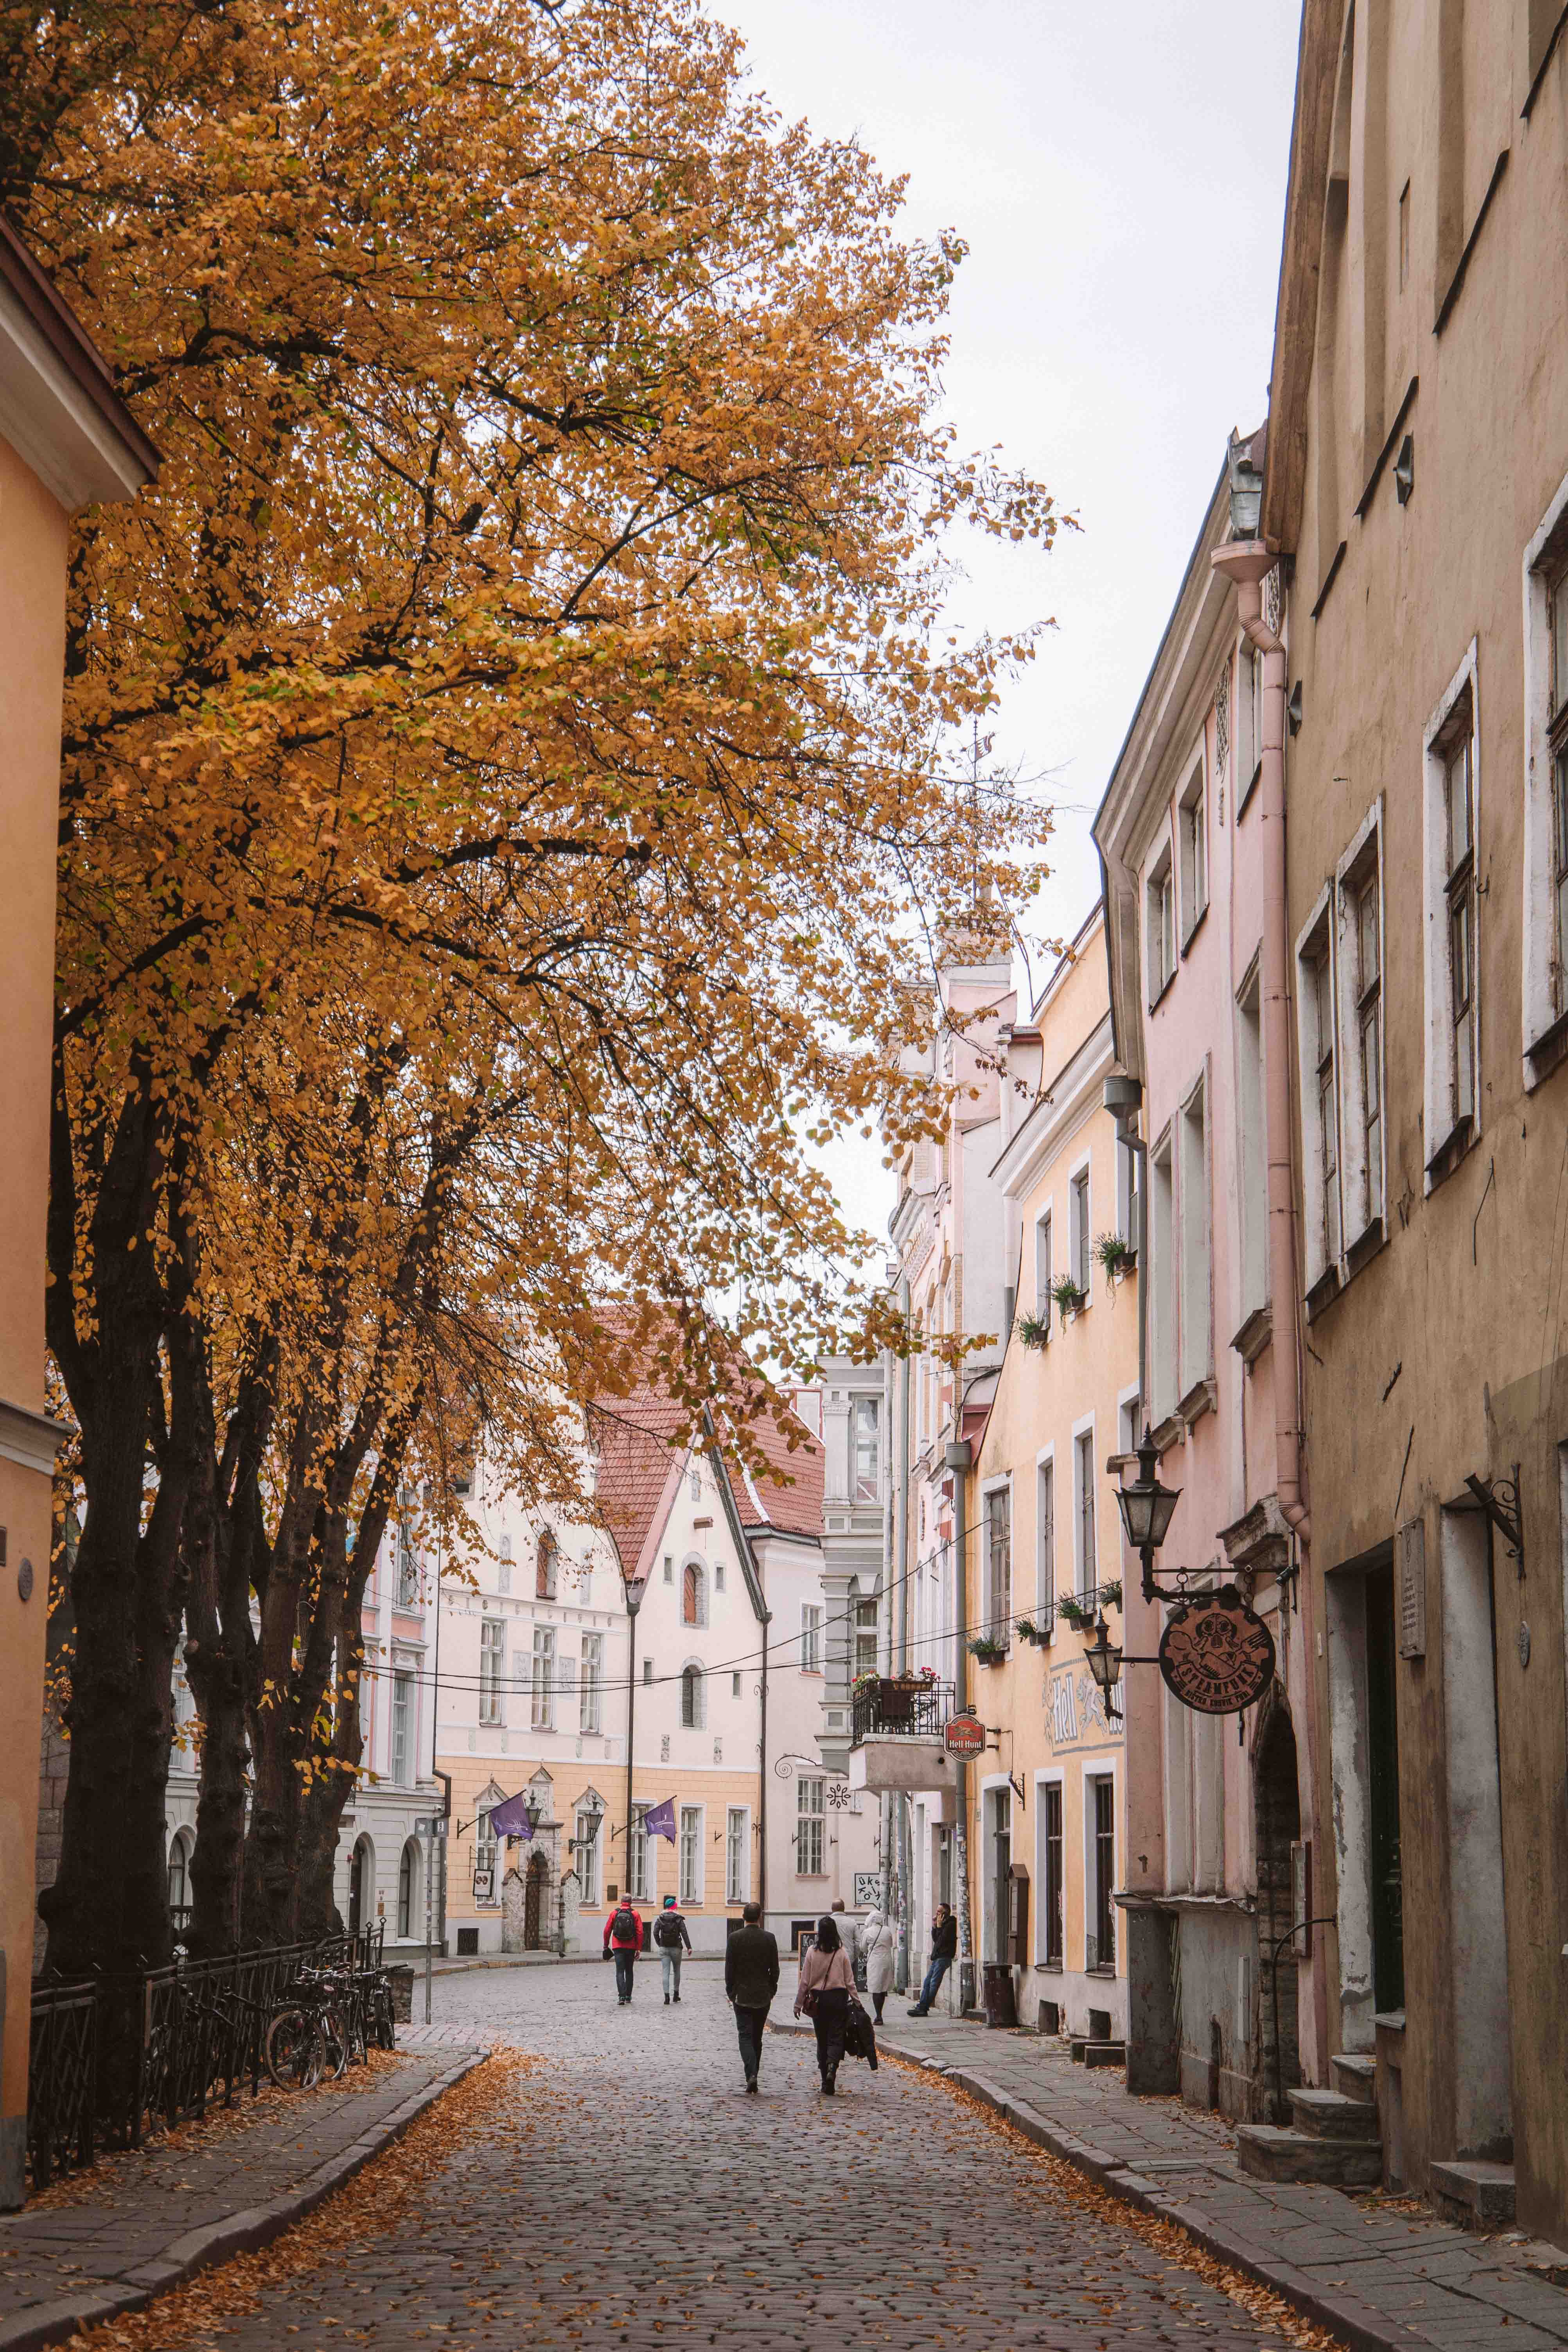 Pikk street in Tallinn's old town